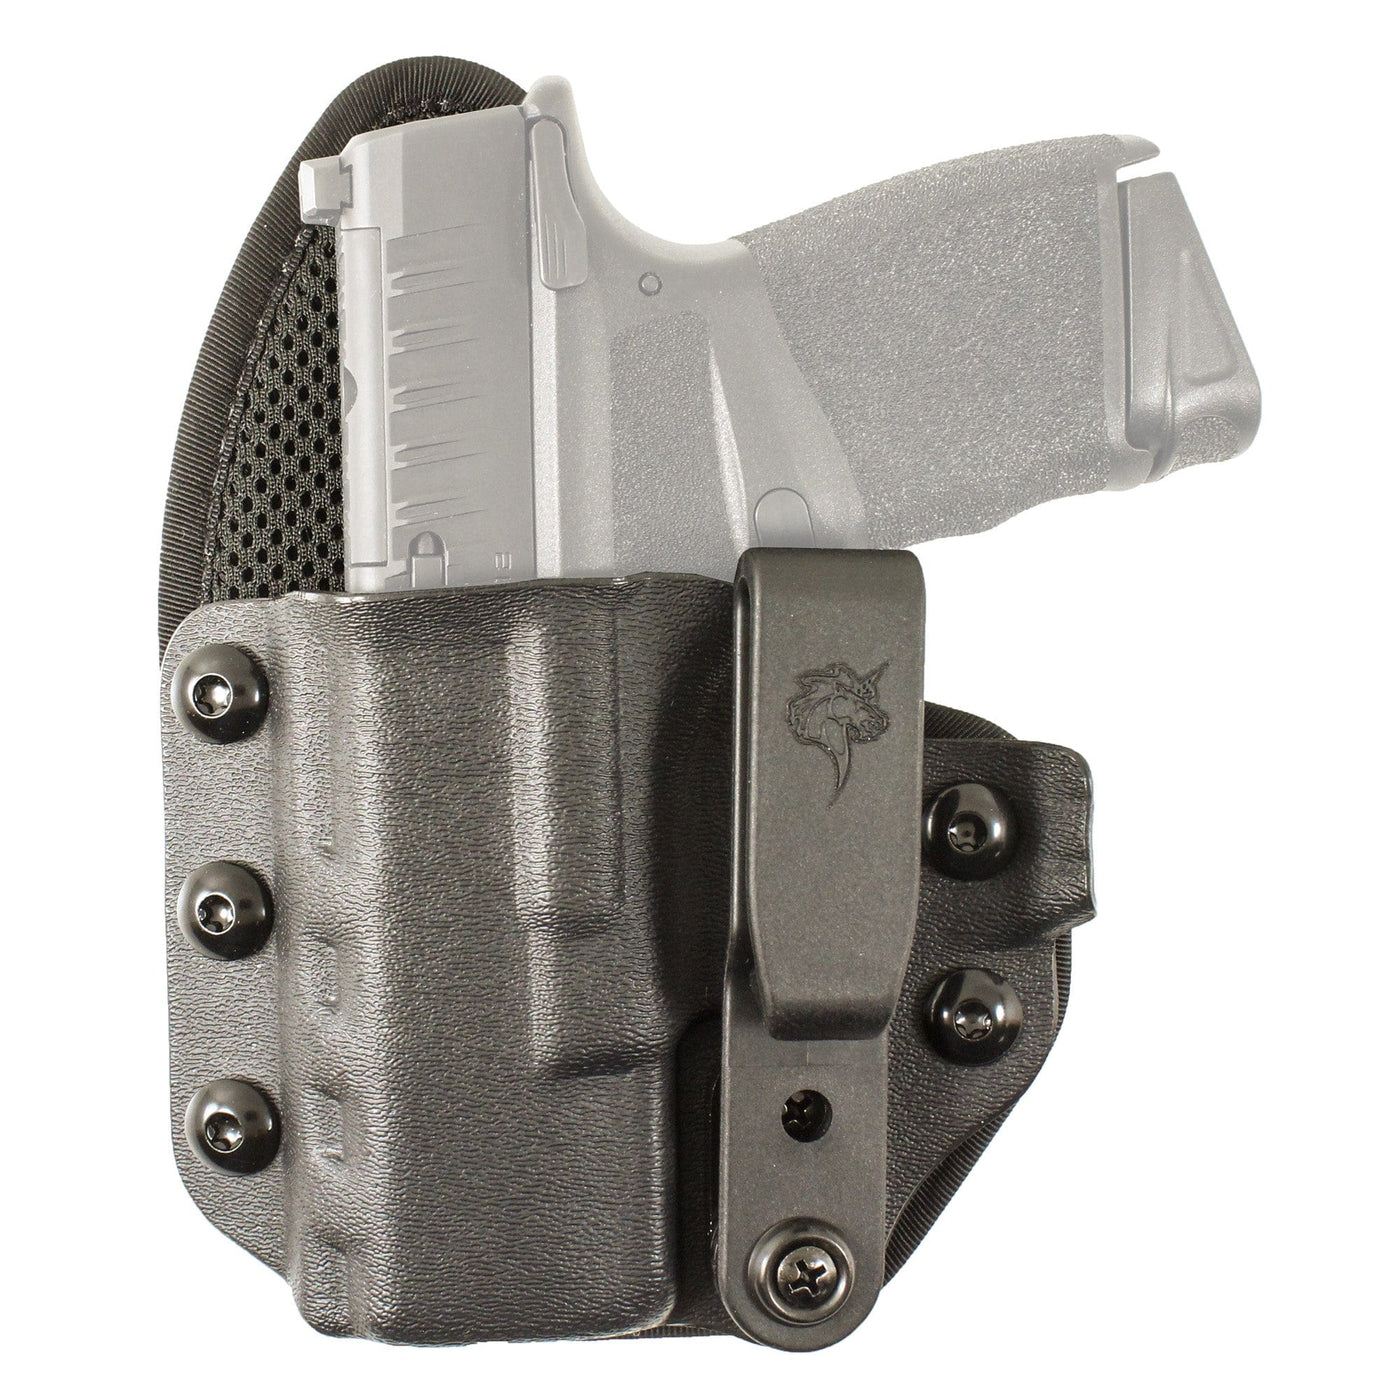 Desantis Gunhide Desantis Uni-tuk Sig P365 Blk Left Hand Firearm Accessories